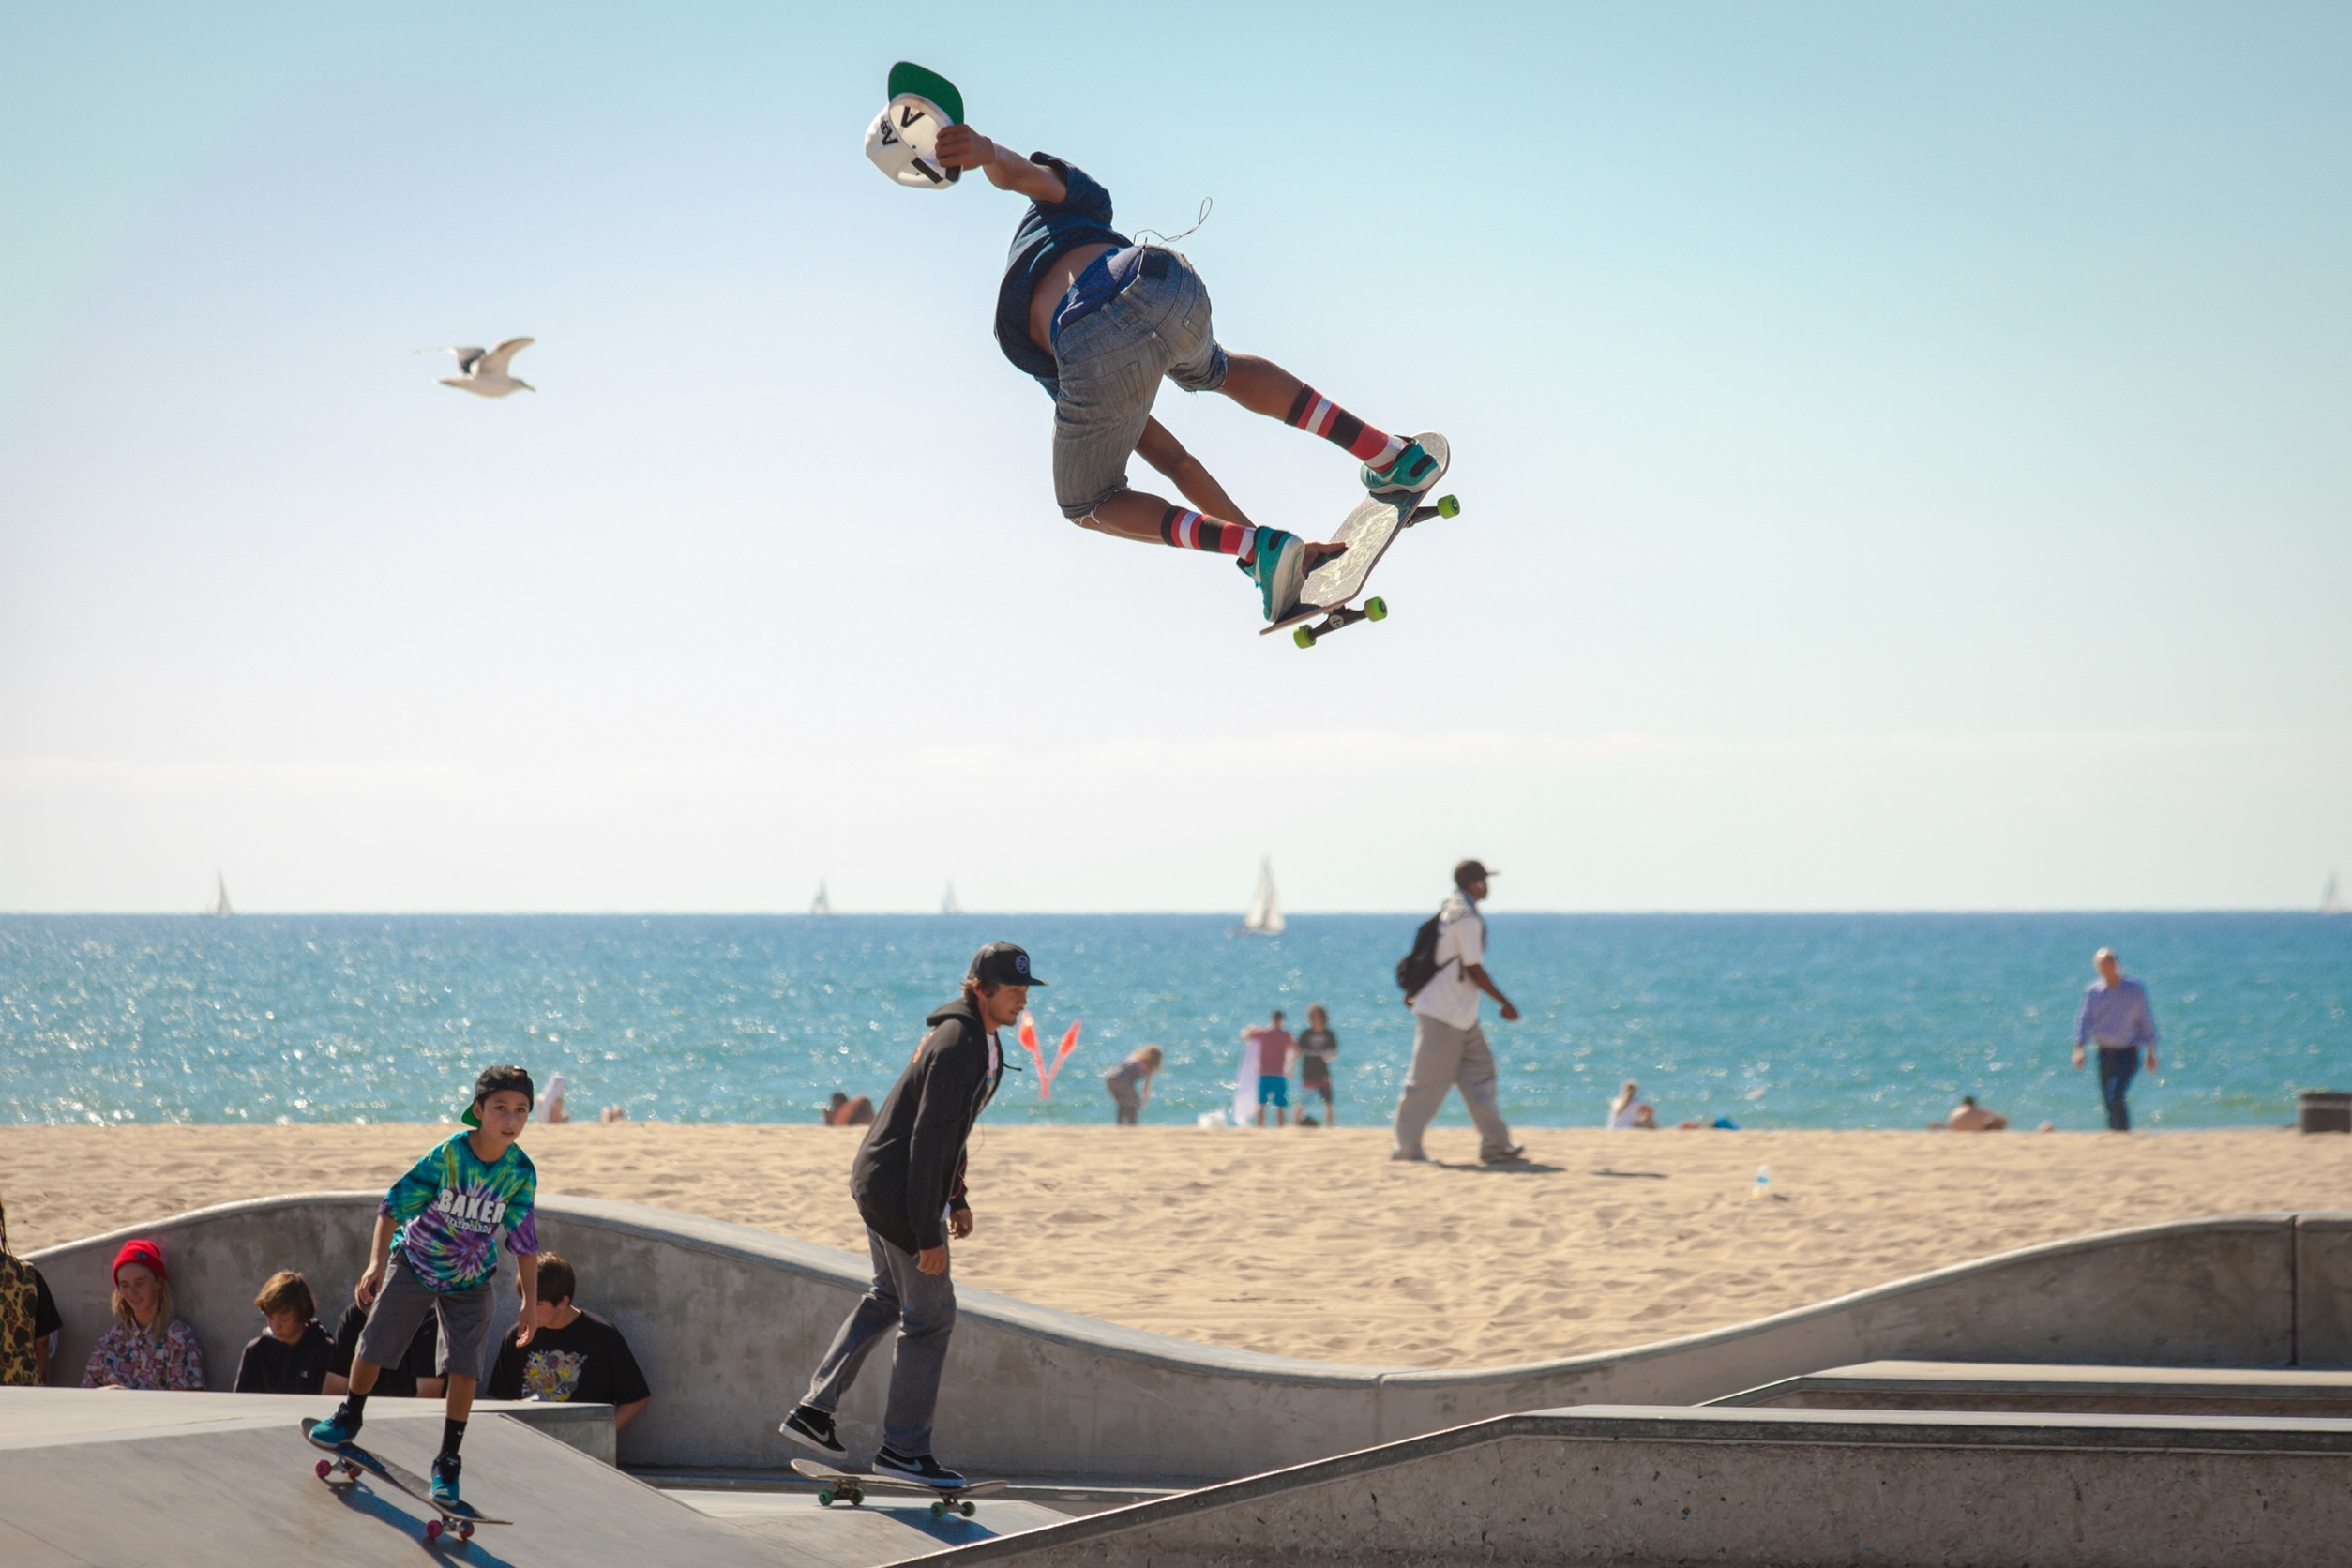 sports, skateboarding, outdoor, people, skateboard, urban